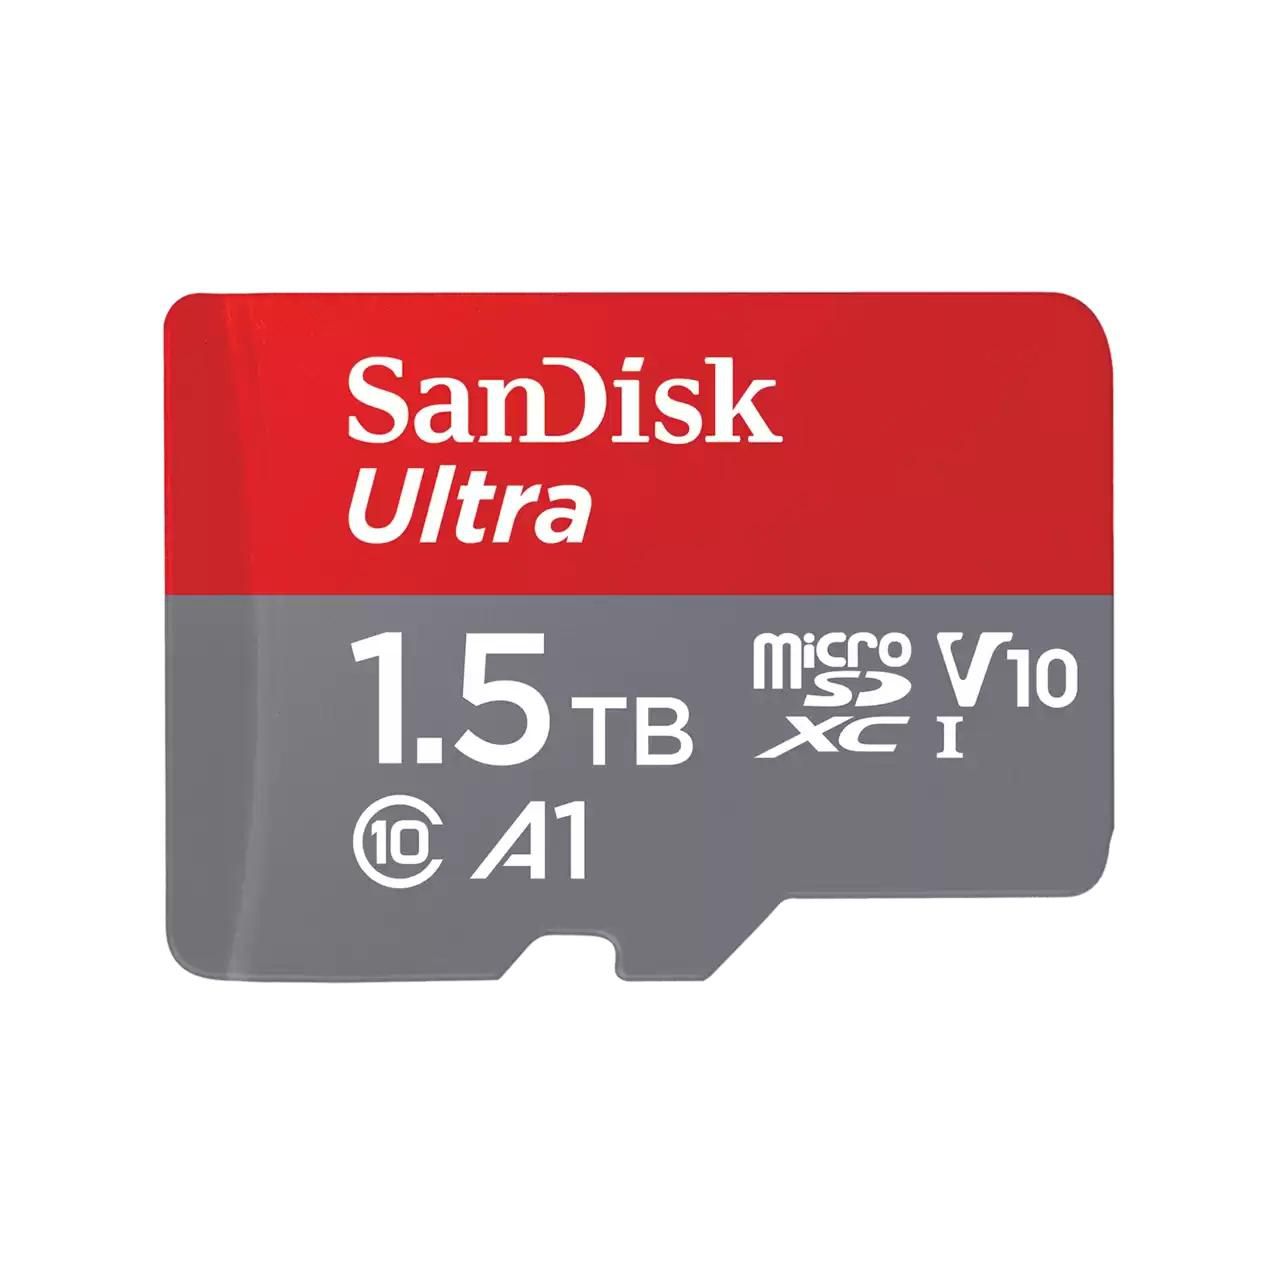 Sandisk SDSQUAC-1T50-GN6MA W128785200 Ultra 1.5 Tb Microsdxc Uhs-I 